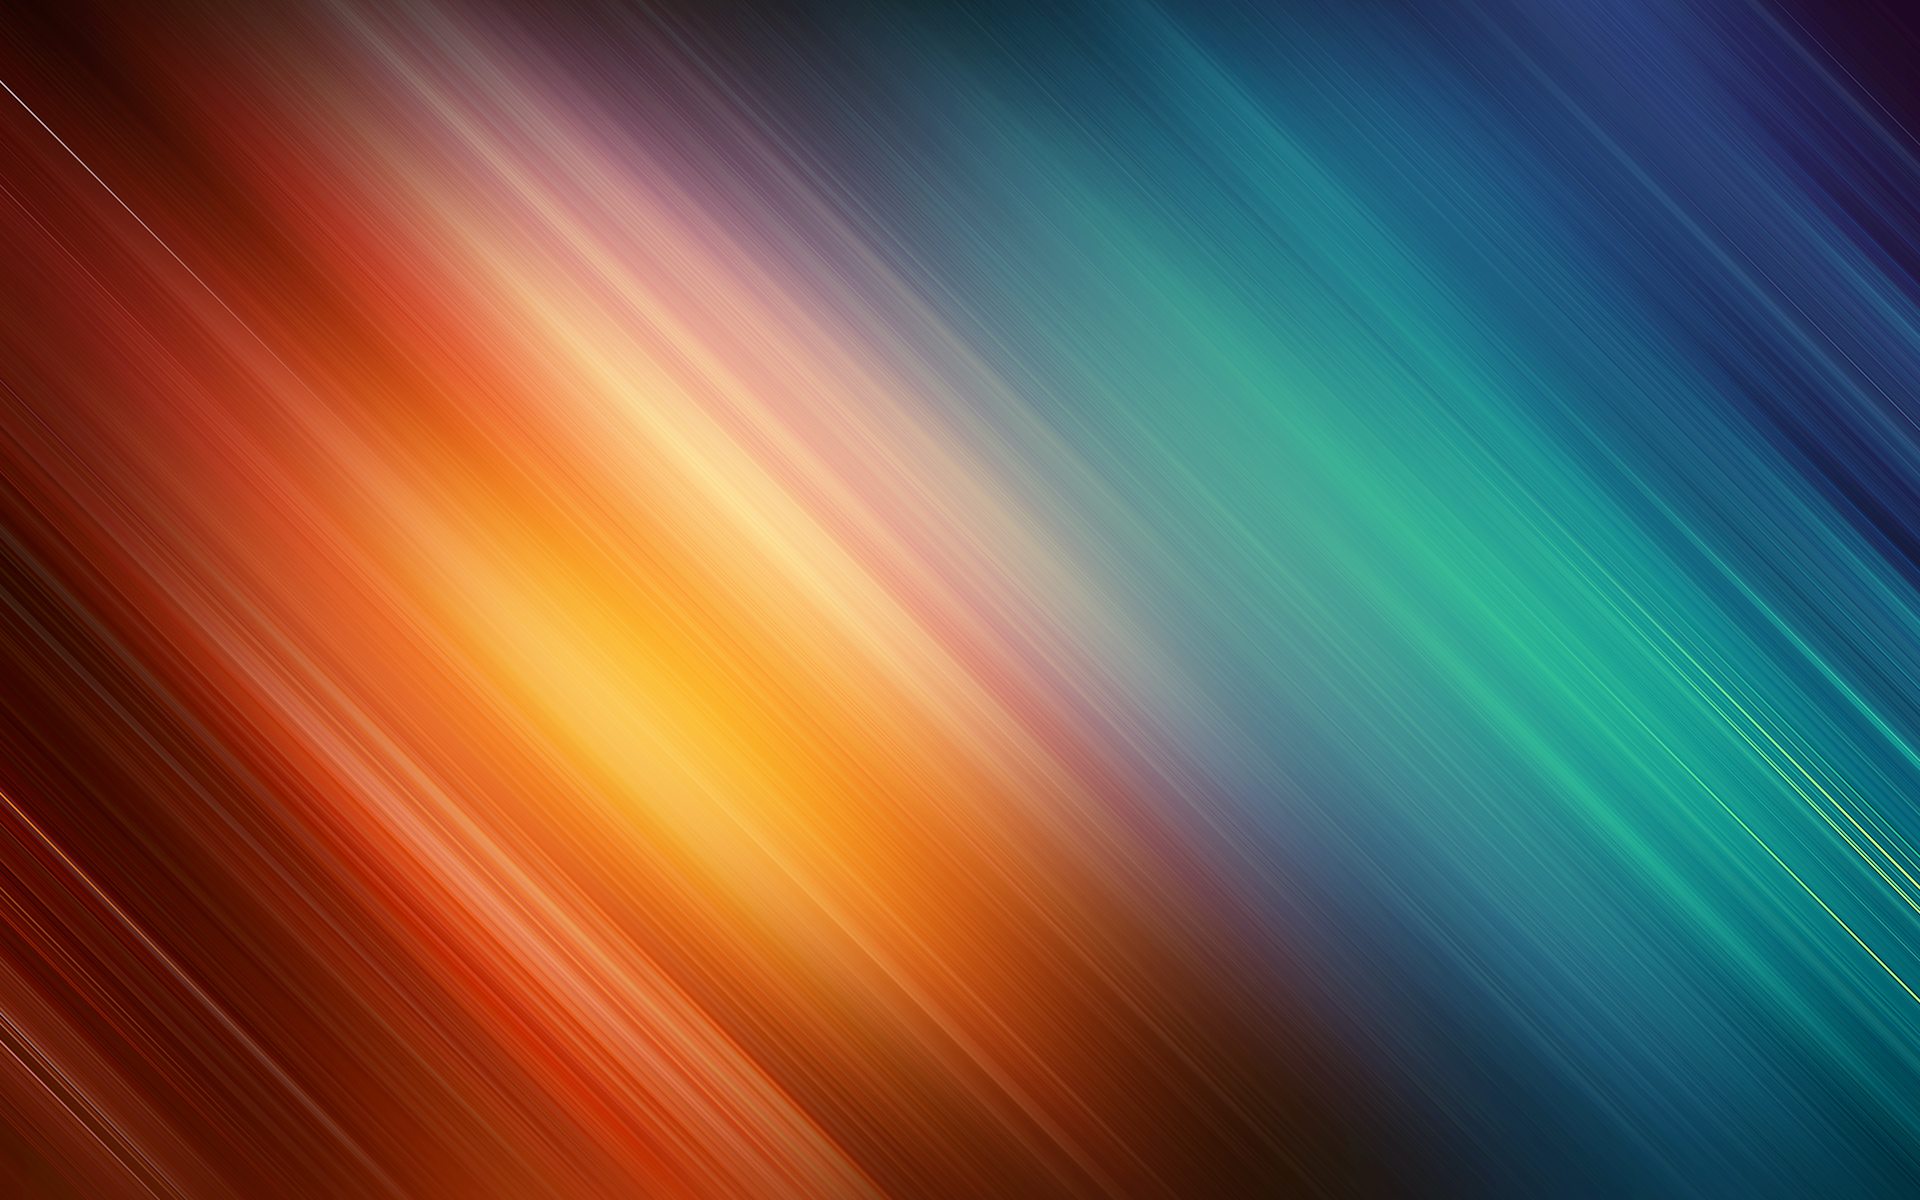 61+] Multi Colored Backgrounds - WallpaperSafari